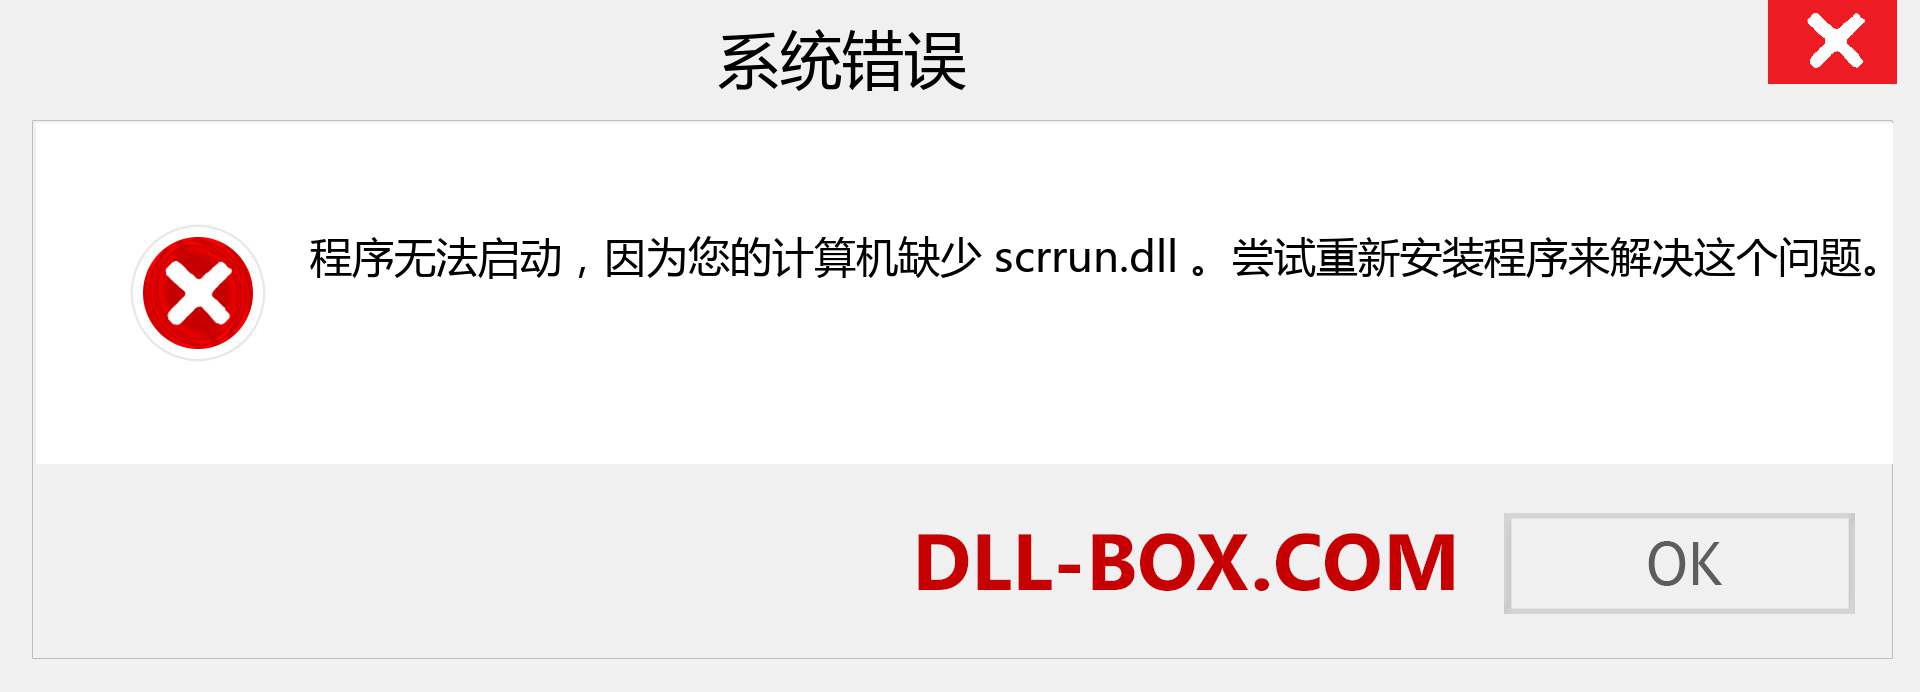 scrrun.dll 文件丢失？。 适用于 Windows 7、8、10 的下载 - 修复 Windows、照片、图像上的 scrrun dll 丢失错误